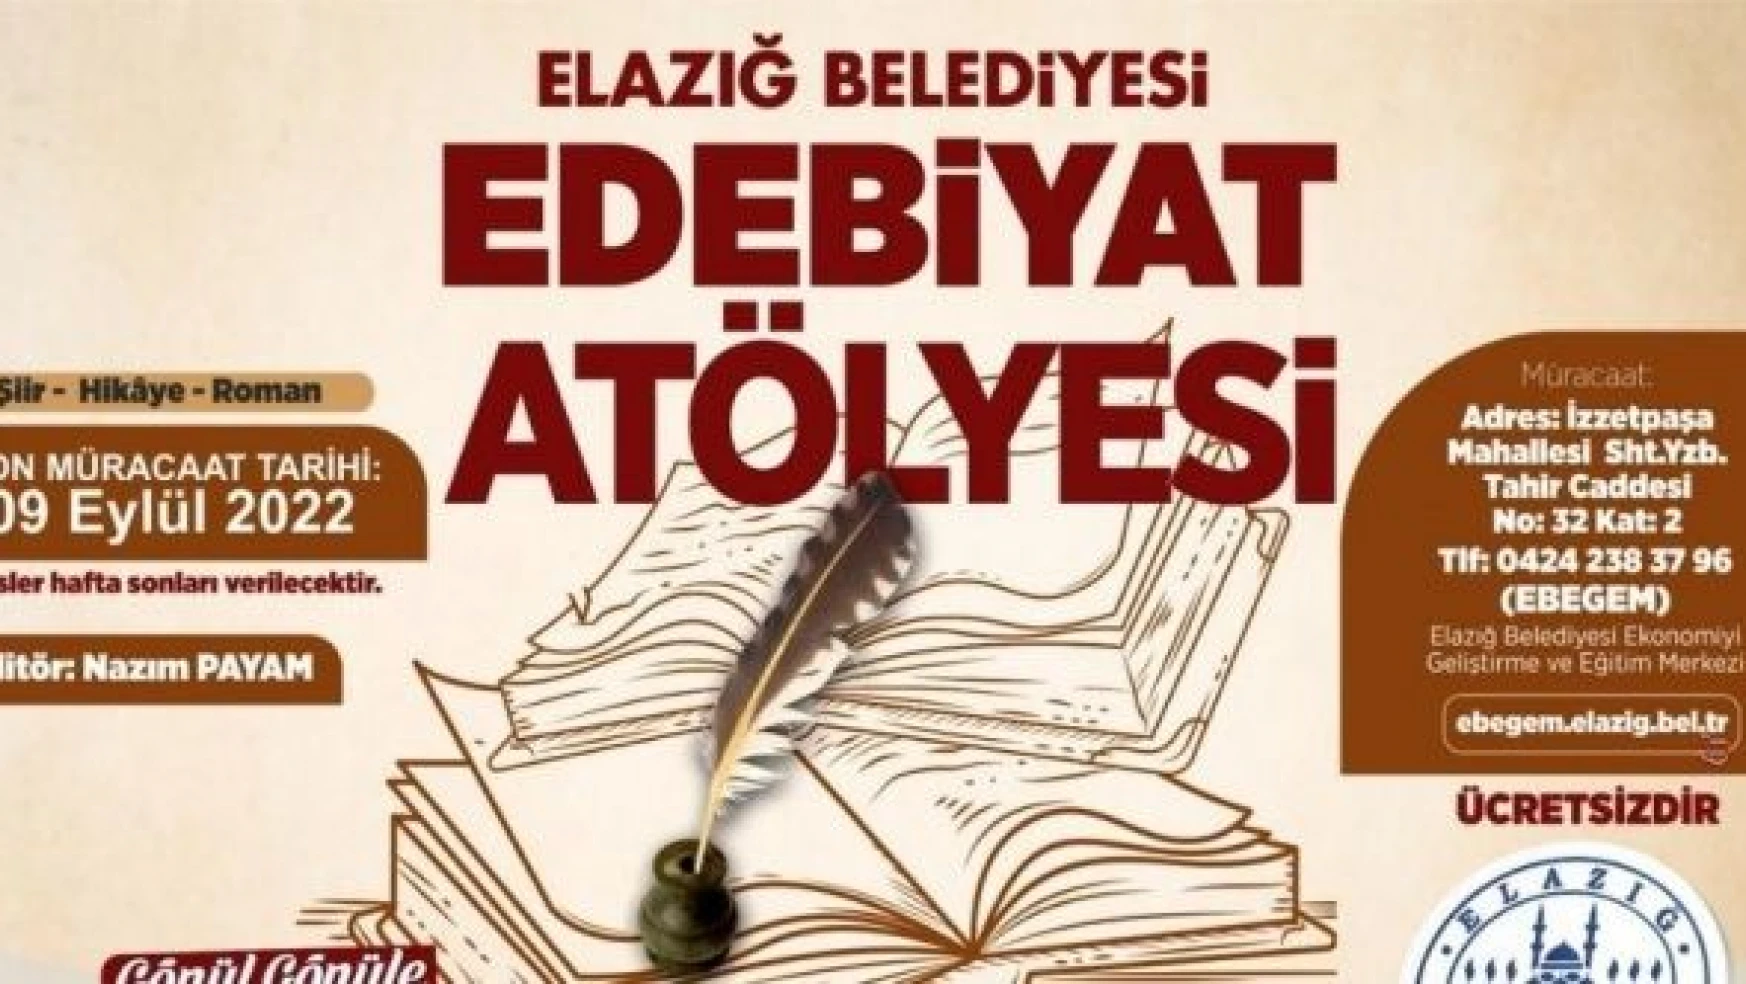 Elazığ'da Edebiyat Atölyesi başvuruları uzatıldı!